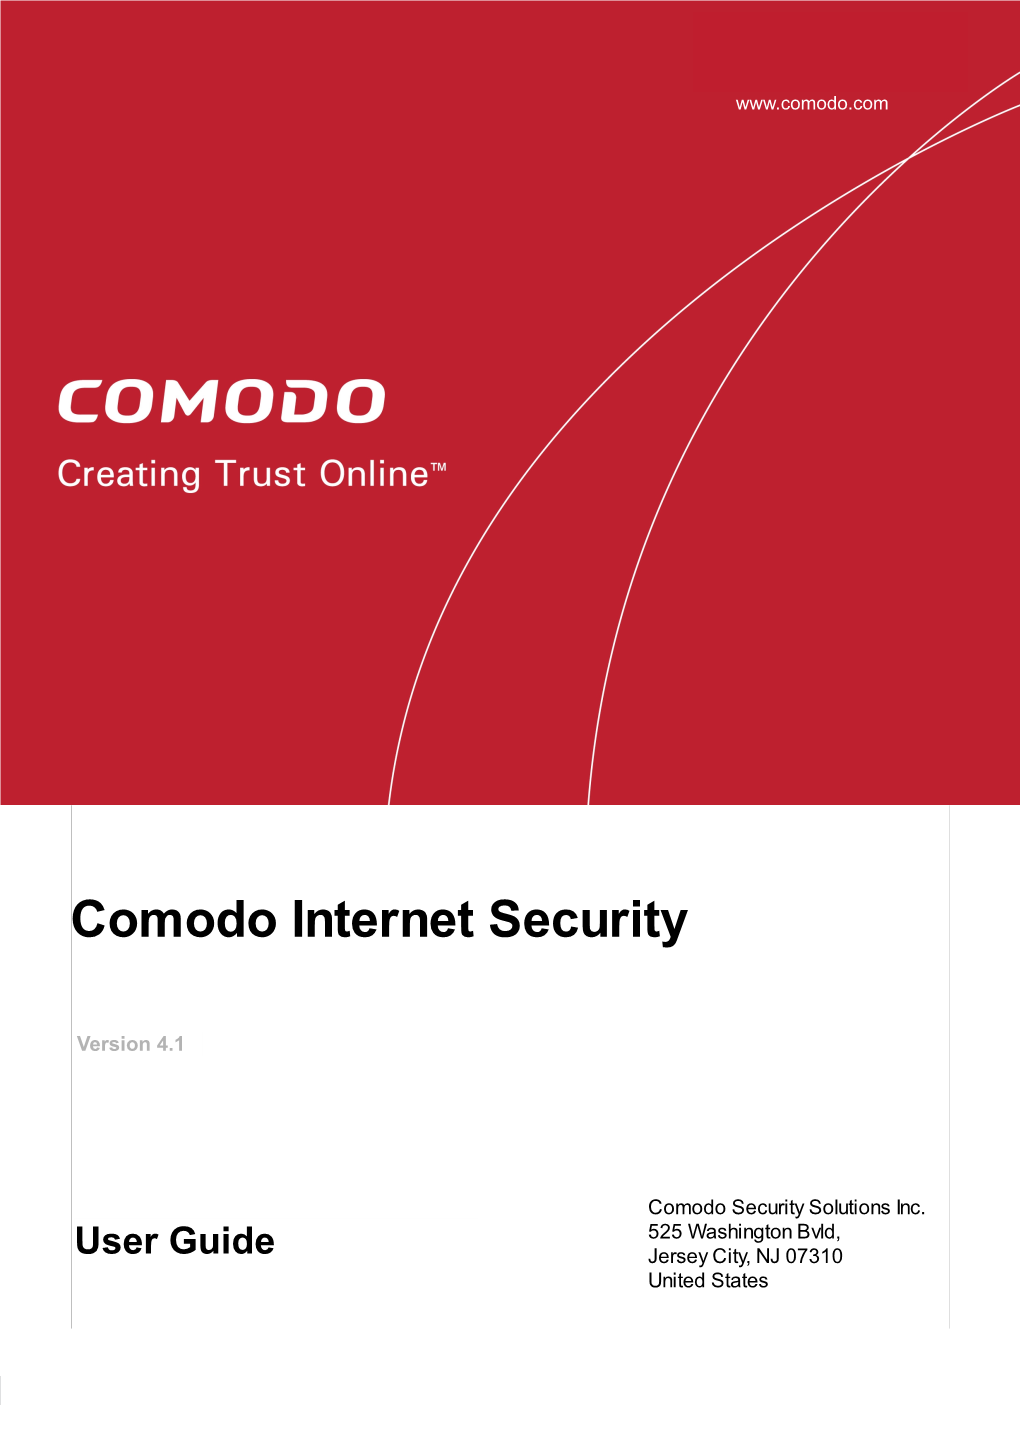 Comodo Internet Security User Guide | © 2010 Comodo Security Solutions Inc